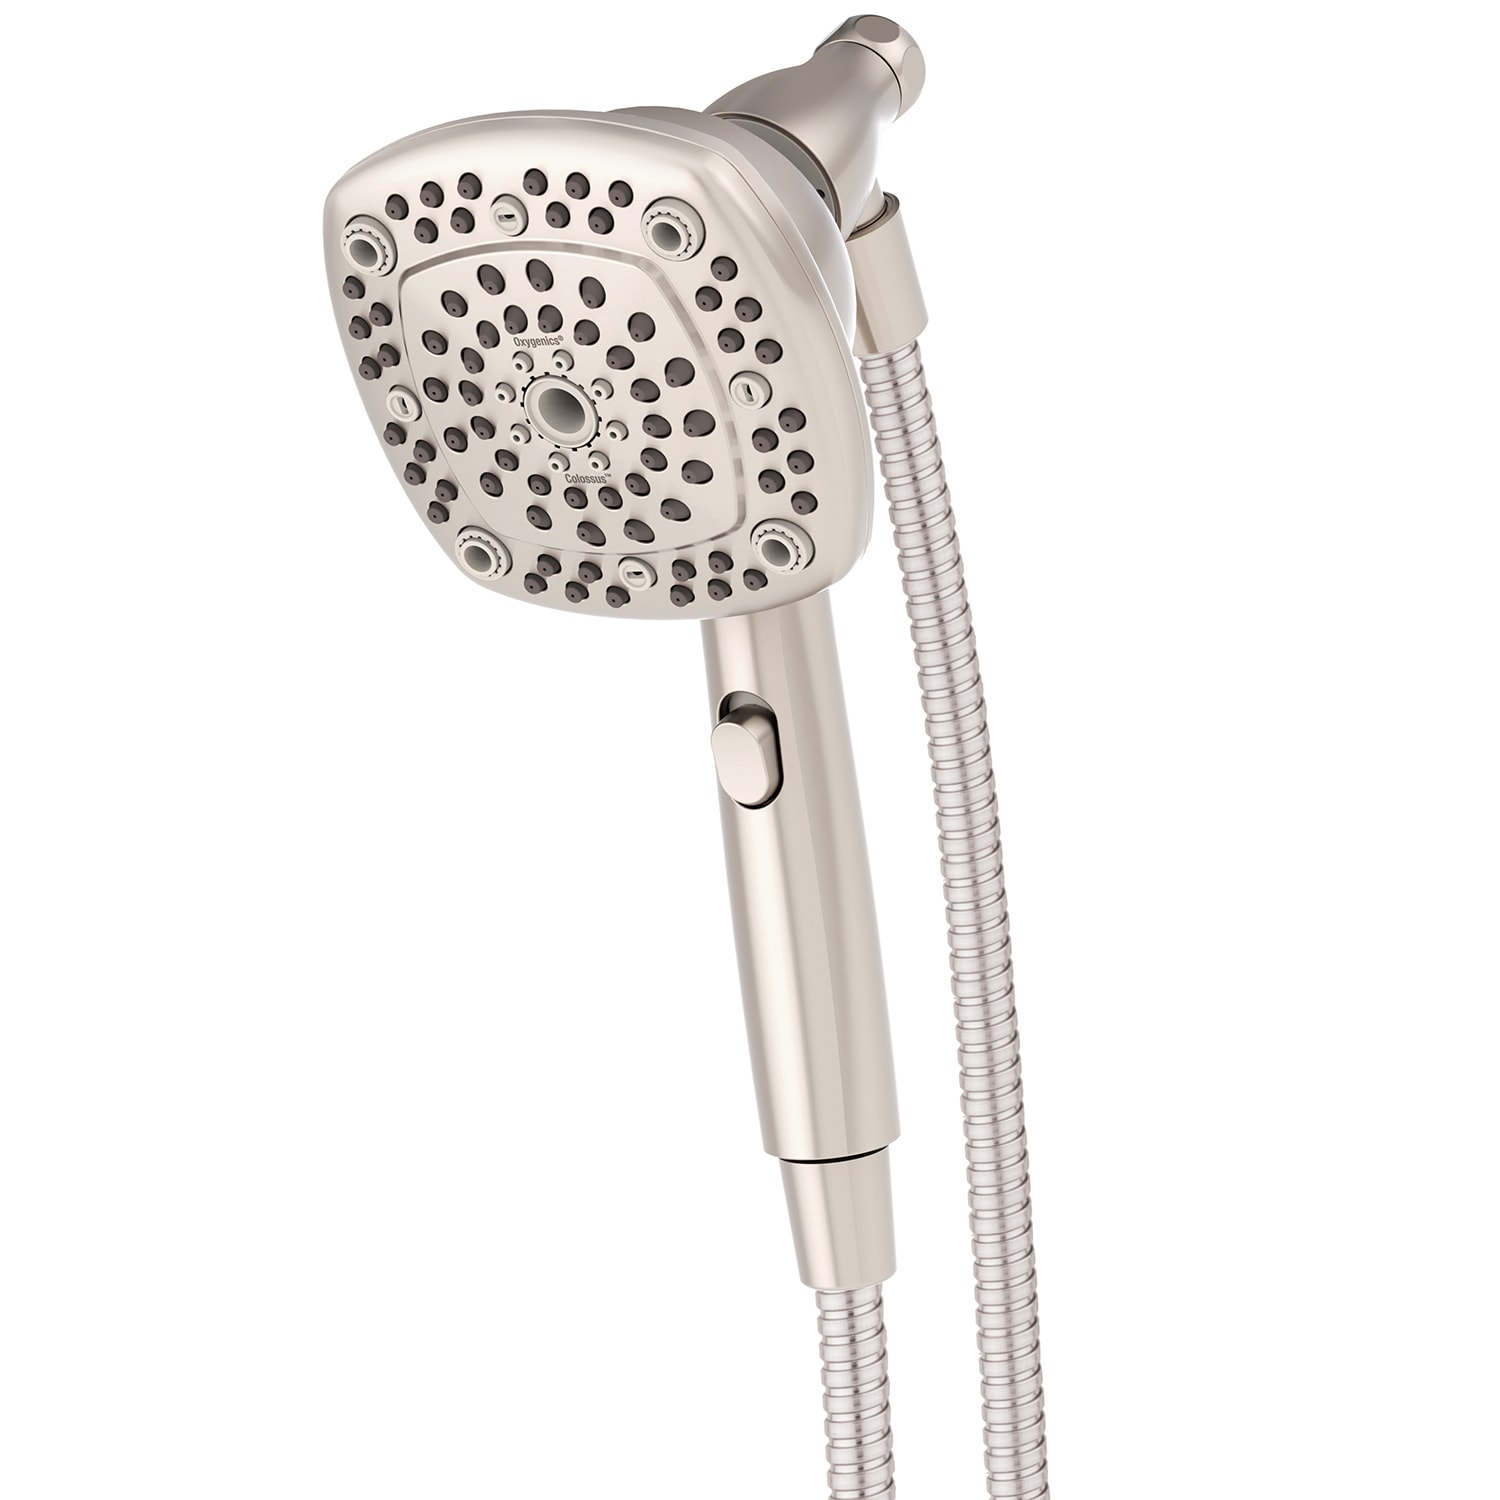 Hand Shower Holder, Shower Head Hook, Adjustable 35 Rotating Shower Holder,  For Hand Shower Or Bathroom Shower Head